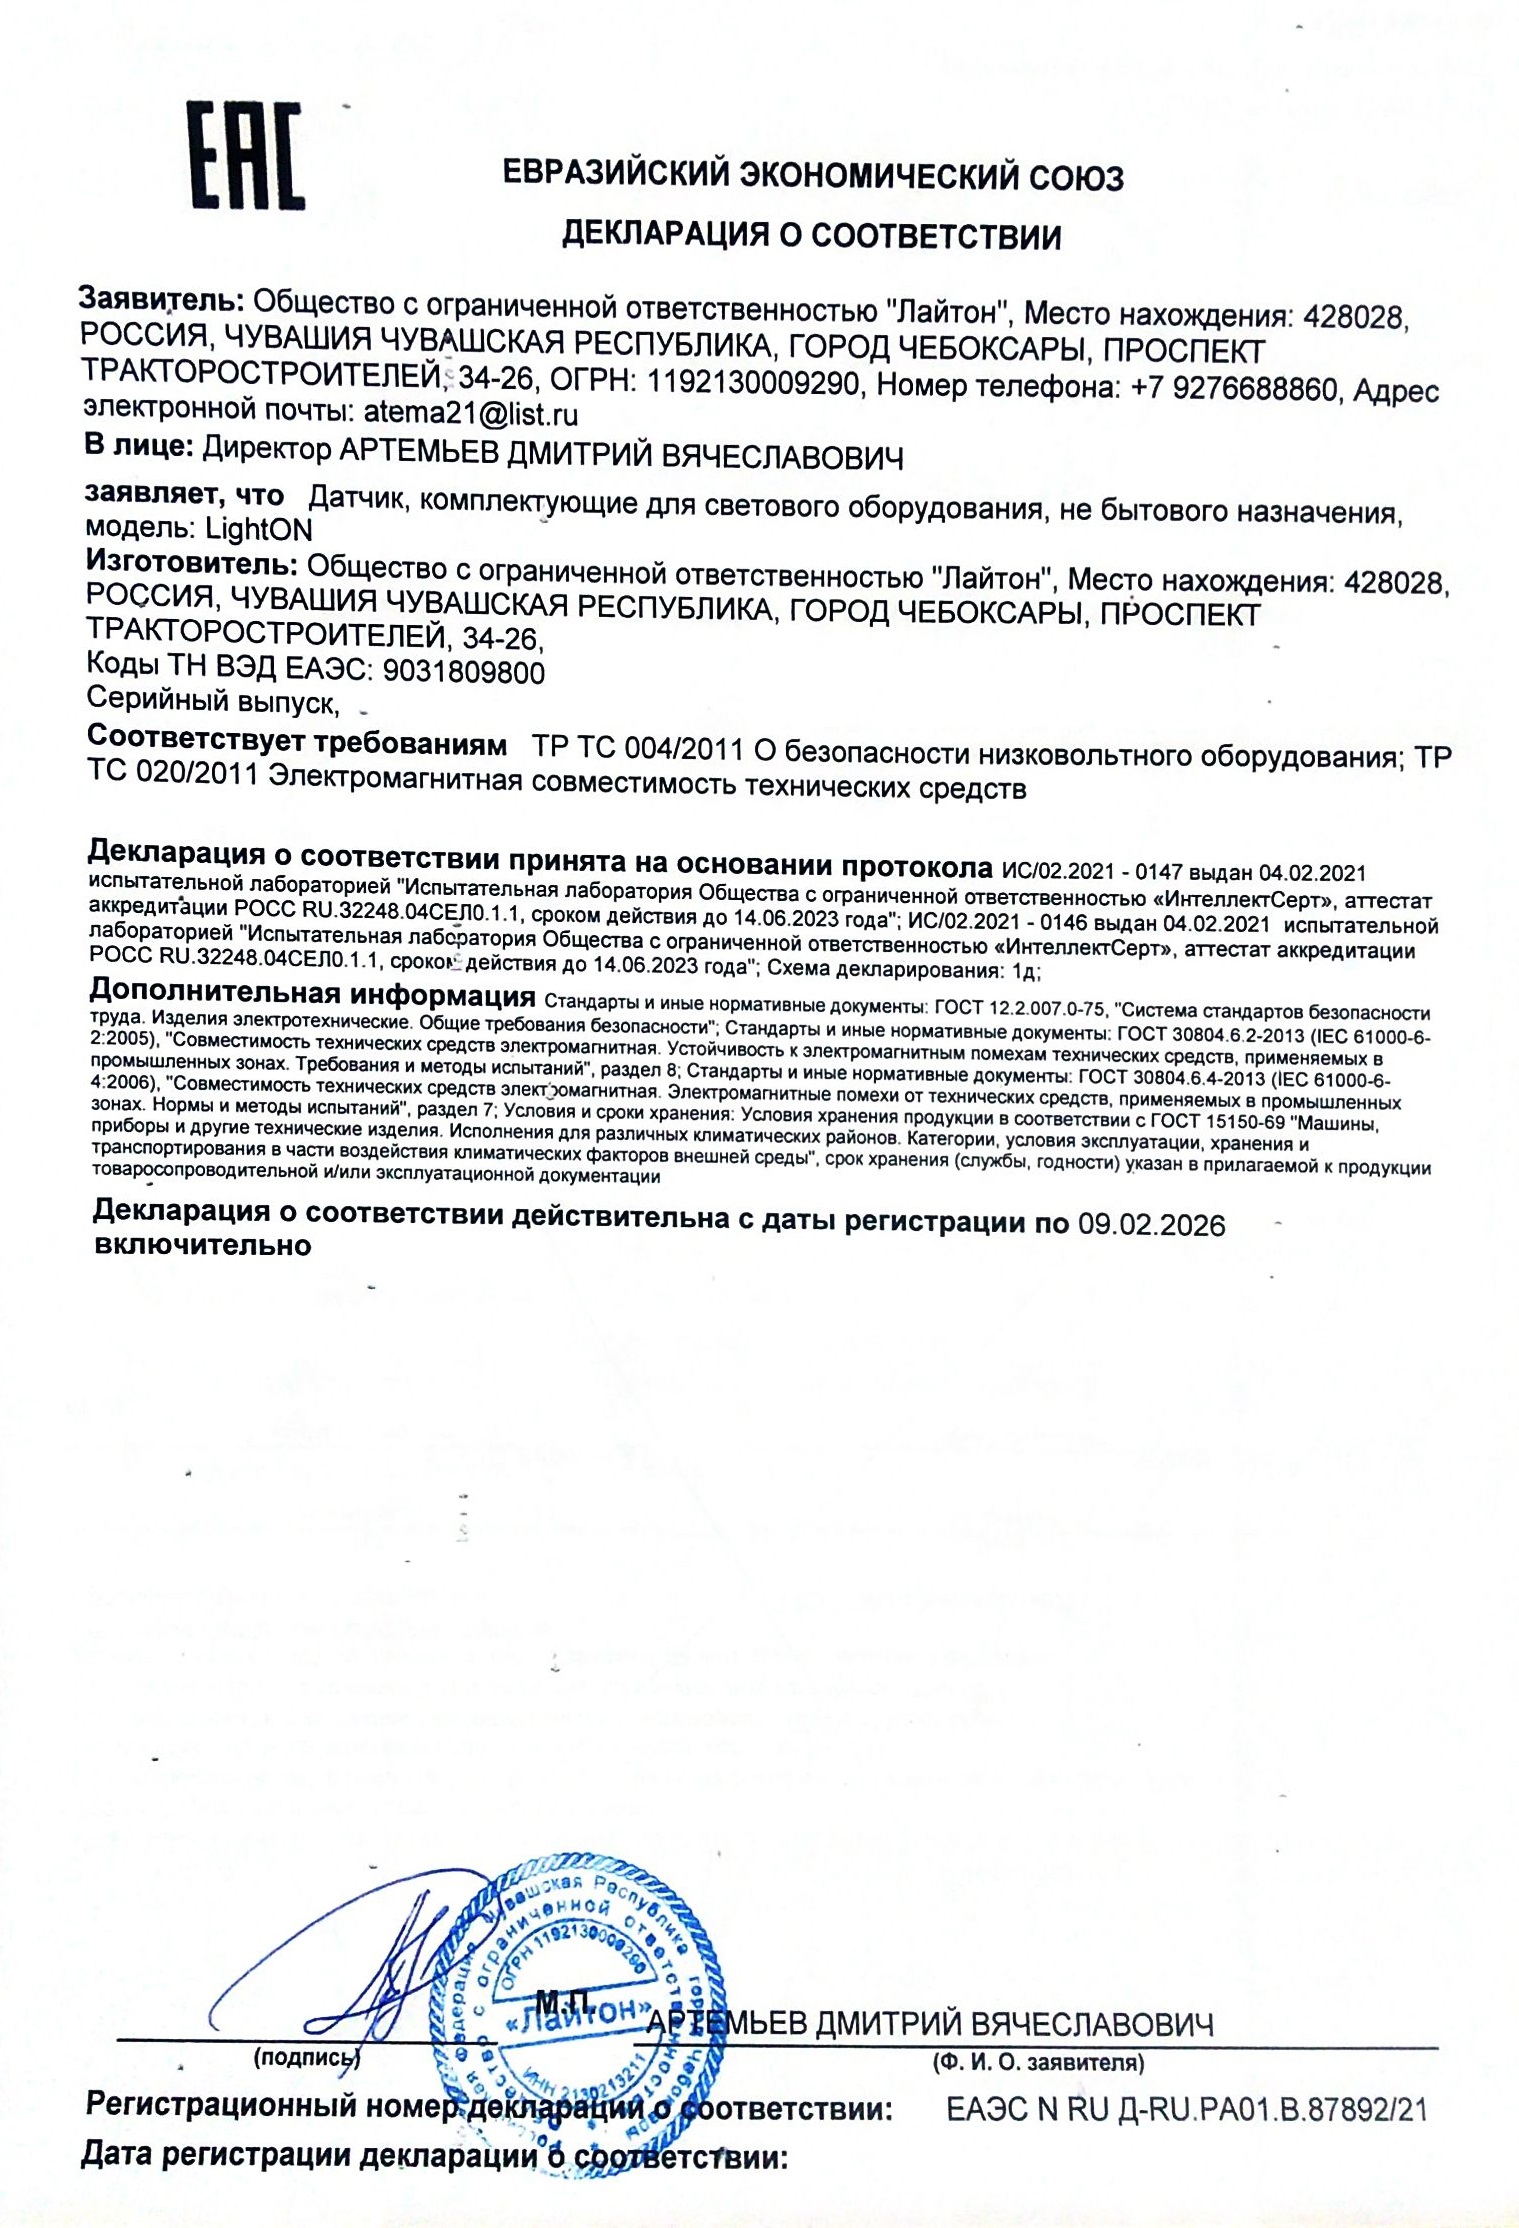 Сертификат на светодиодные светильники ЖКХ в Приморском крае